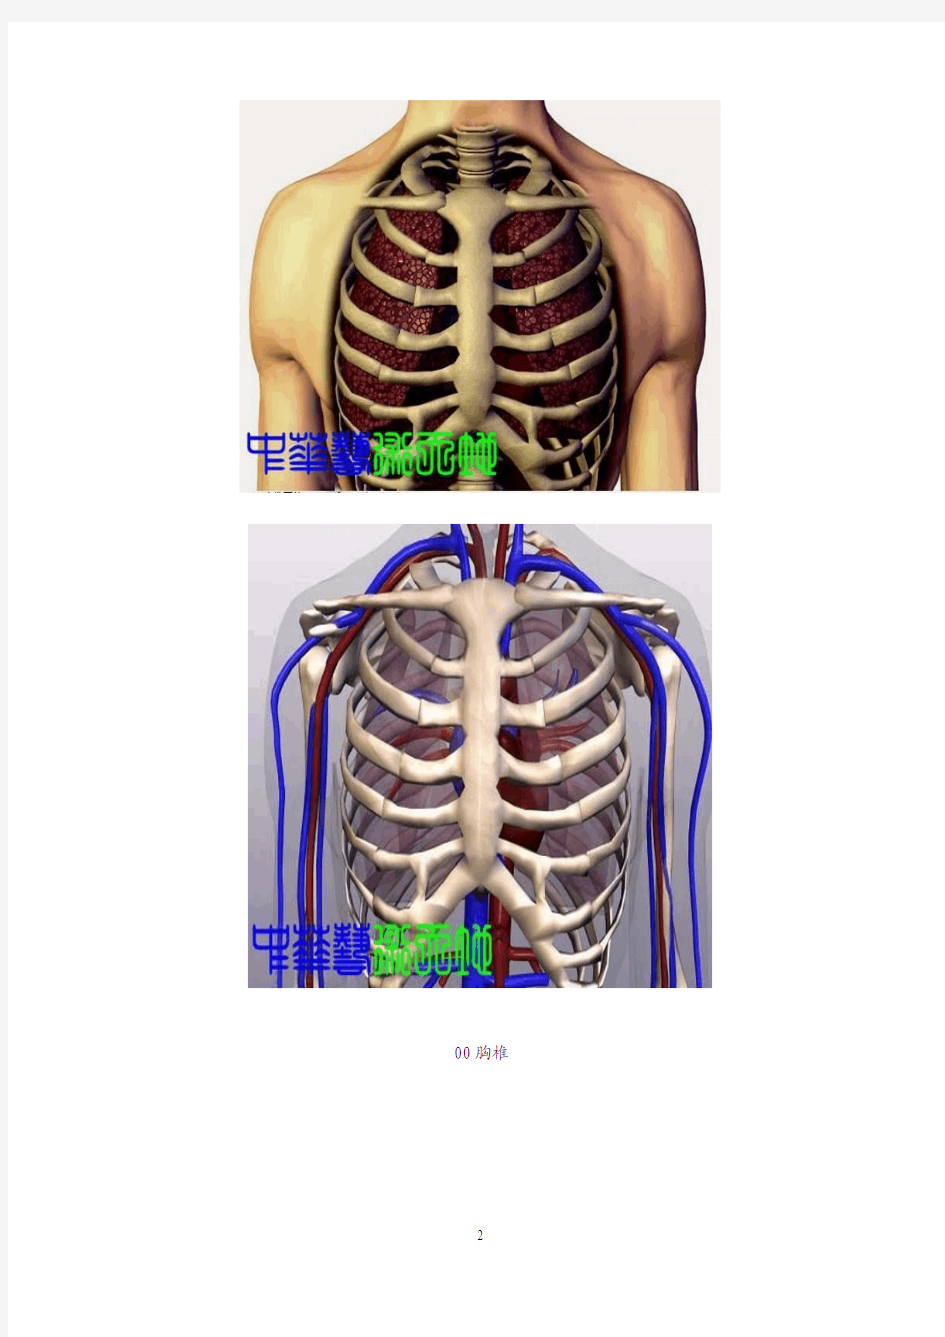 胸椎、颈椎、腰椎、骨棘突定位 图文学解(精华)